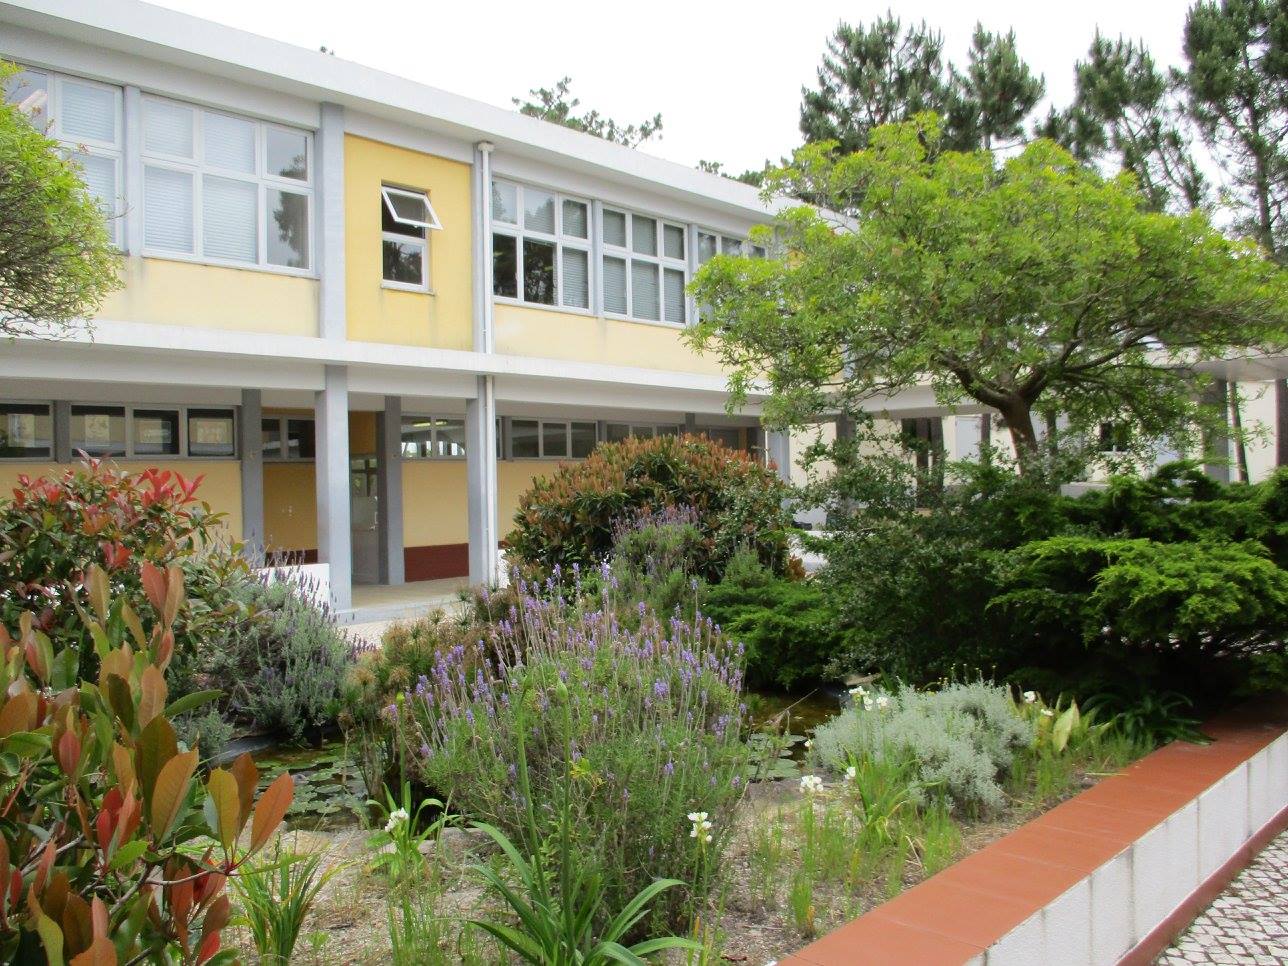 การสร้างแรงจูงใจให้กับนักเรียน: กรณีศึกษาของโรงเรียน ClassPoint กับ Escola Profissional de Penafirme ในเมือง Torres Vedras ประเทศโปรตุเกส